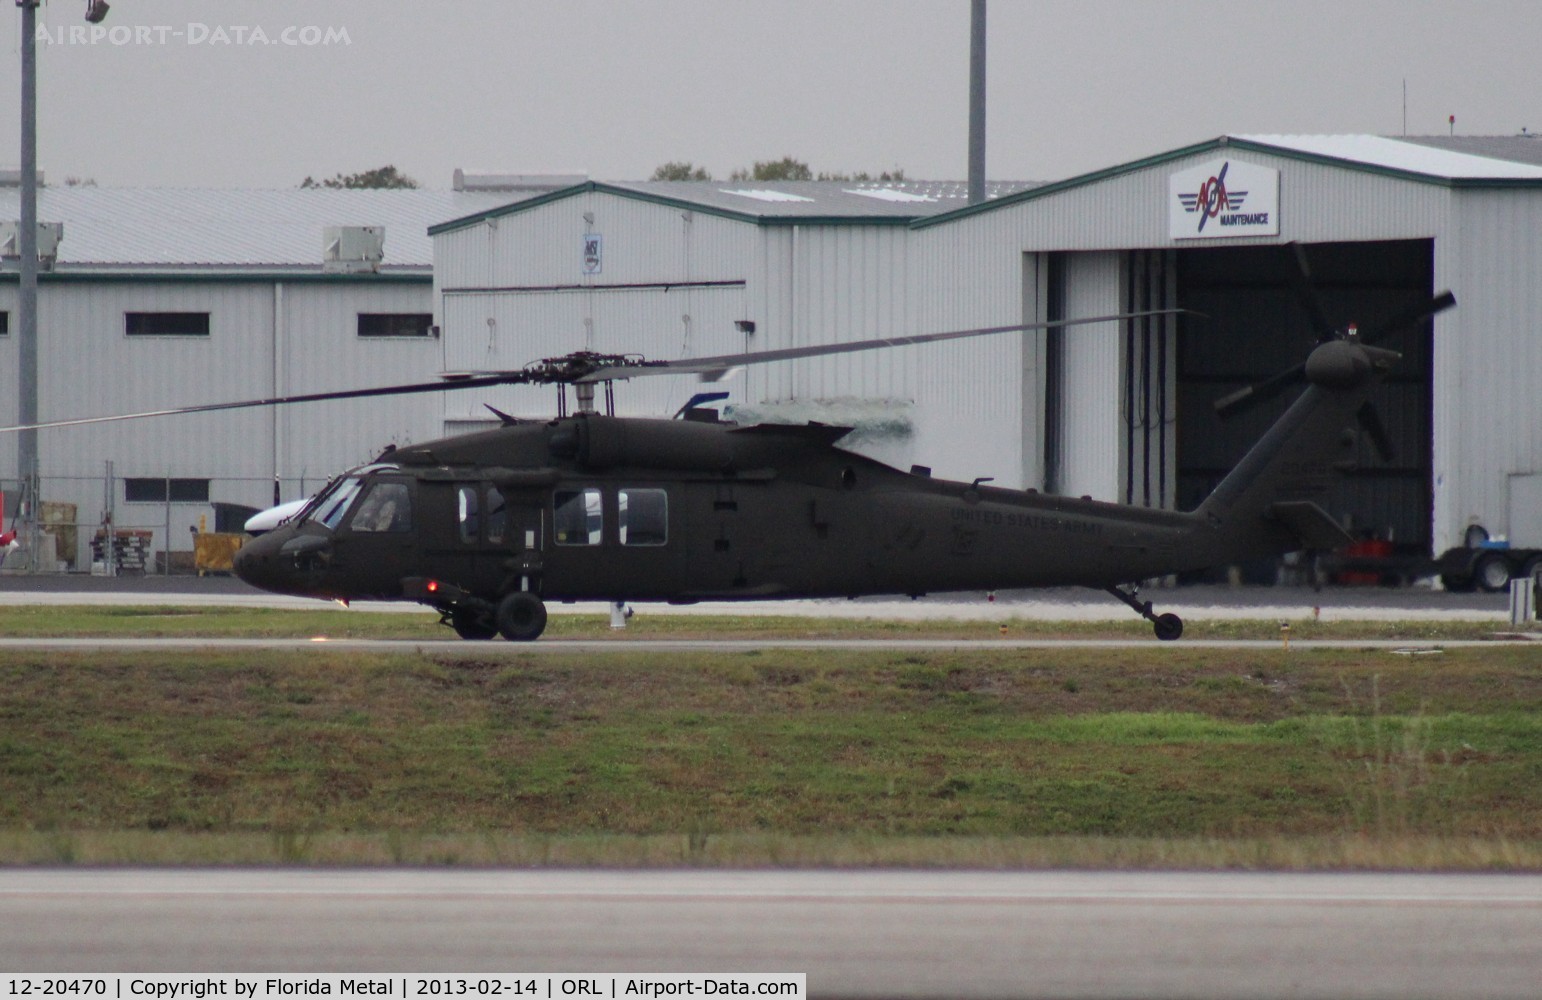 12-20470, 2012 Sikorsky UH-60M Black Hawk C/N 70.4139, UH-60M Black Hawk